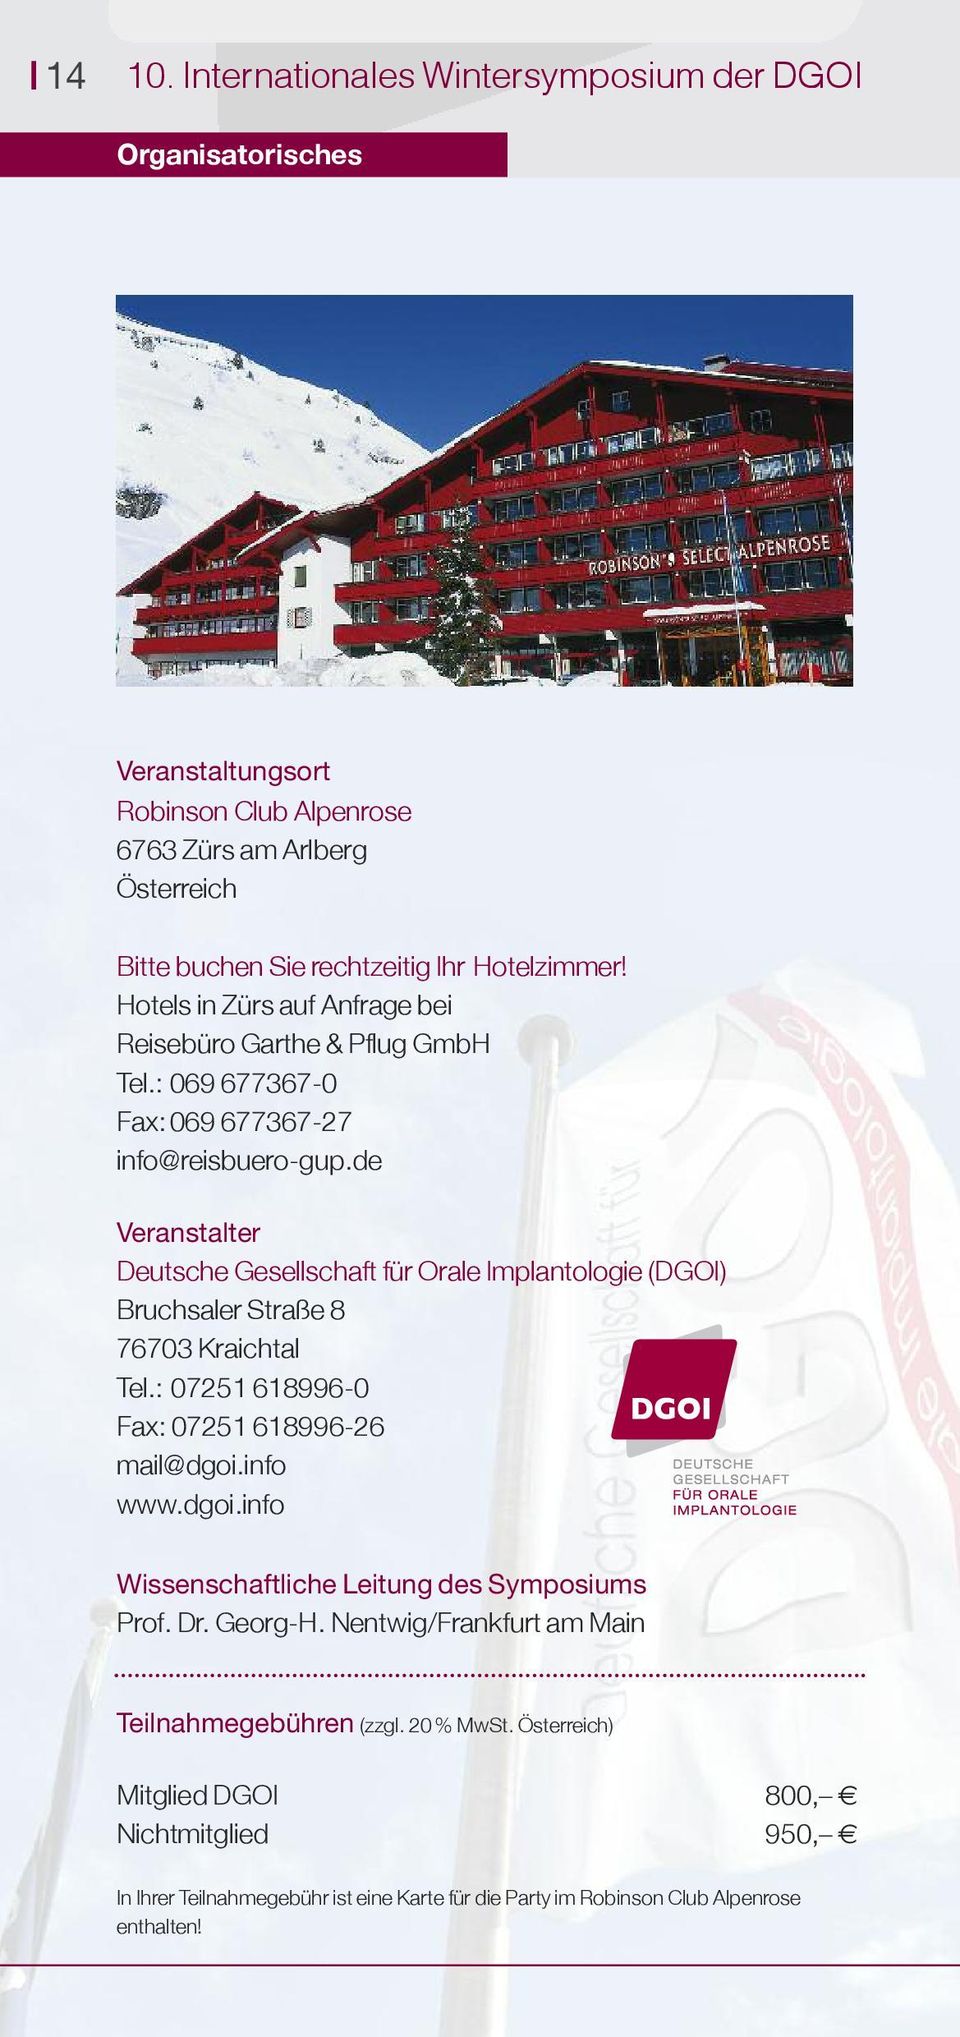 de Veranstalter Deutsche Gesellschaft für Orale Implantologie (DGOI) Bruchsaler Straße 8 76703 Kraichtal Tel.: 07251 618996-0 Fax: 07251 618996-26 mail@dgoi.